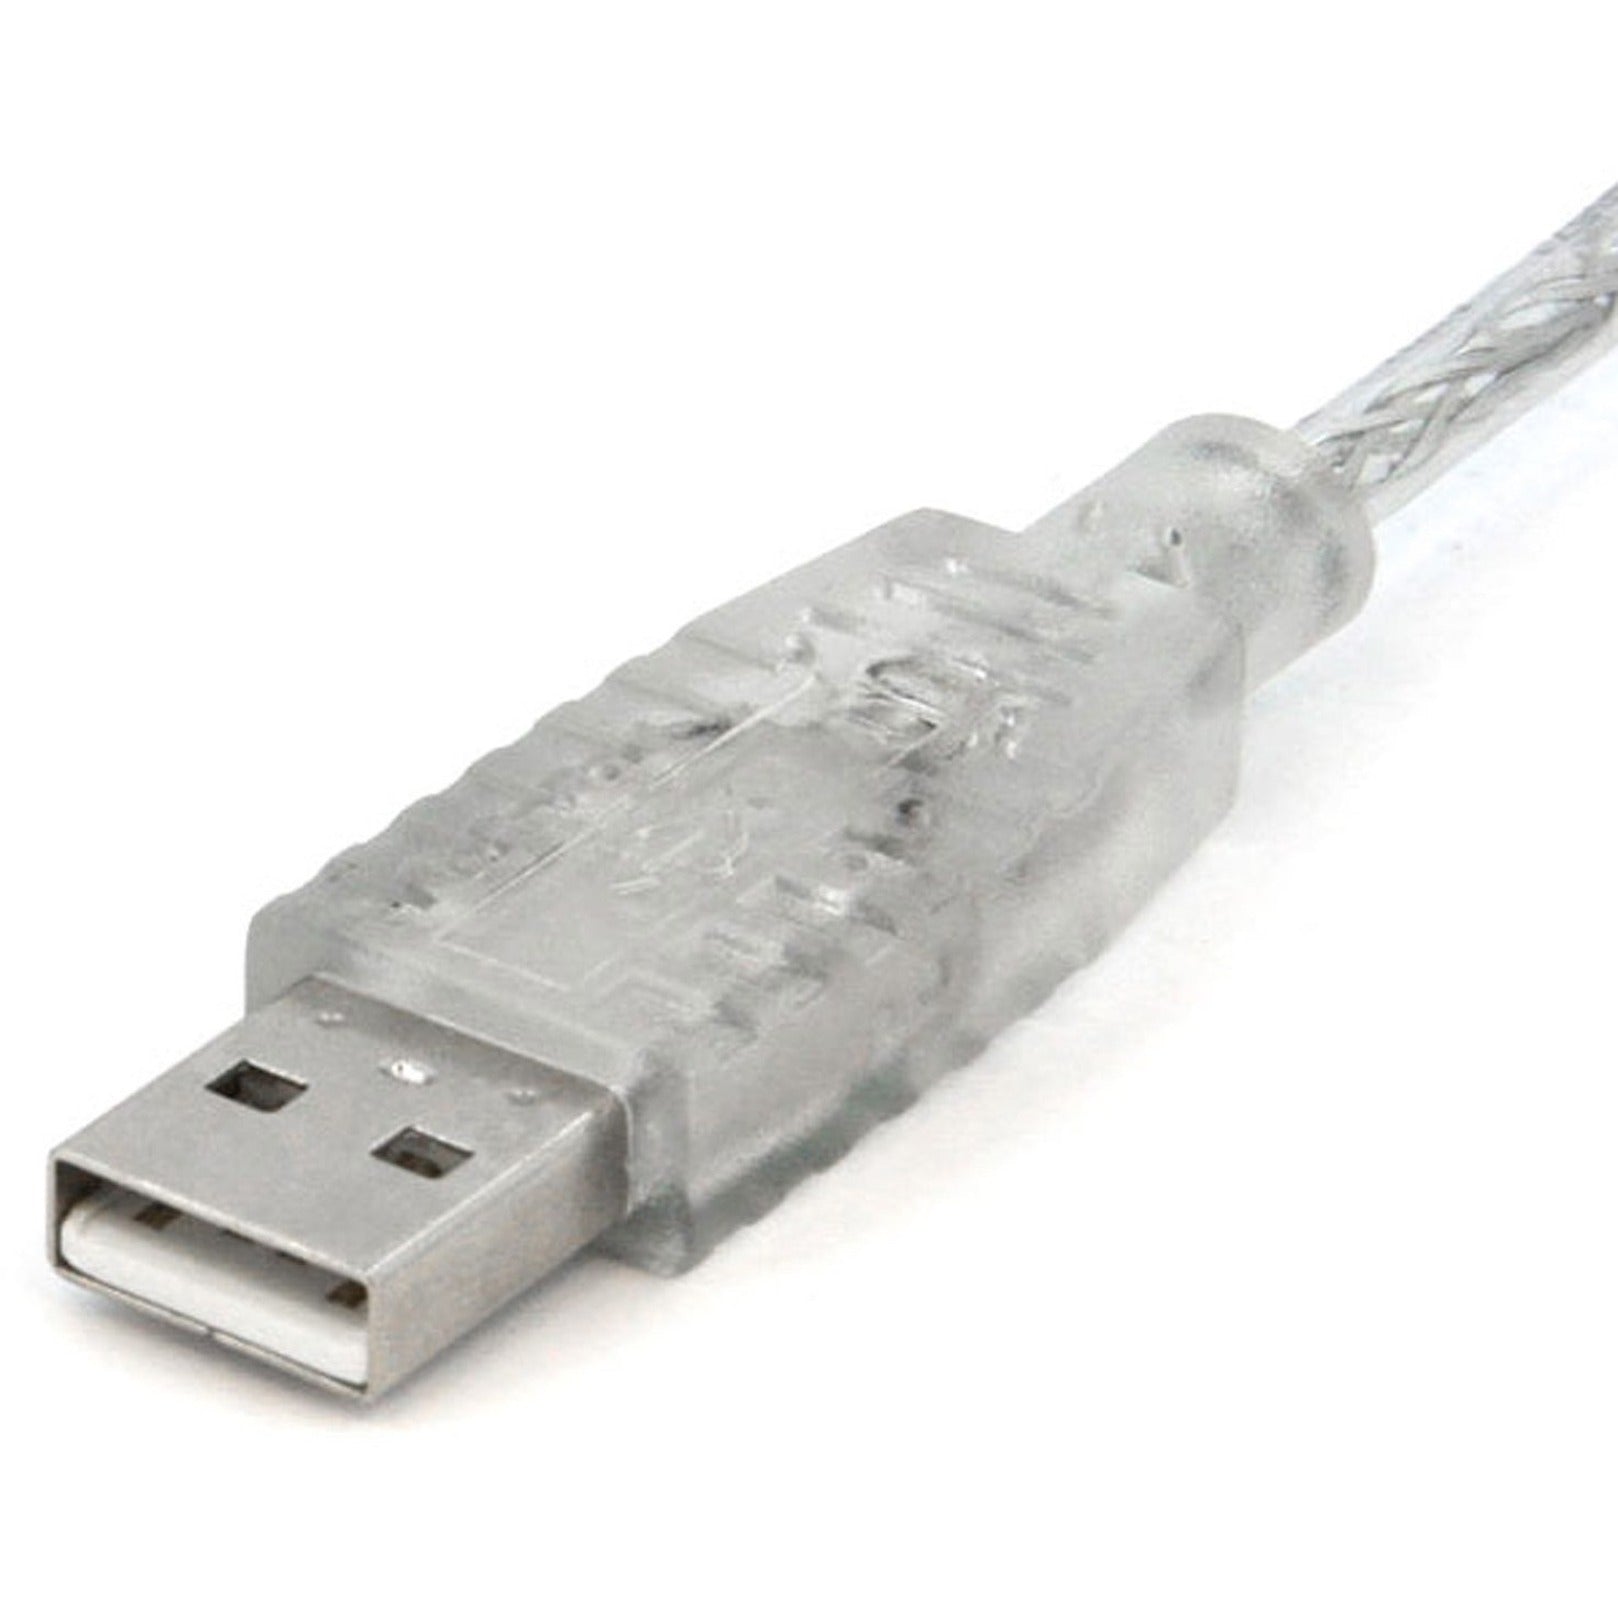 كابل USB 2.0 شفاف StarTech.com USBFAB10T ، ١٠ قدم ، كابل نقل البيانات